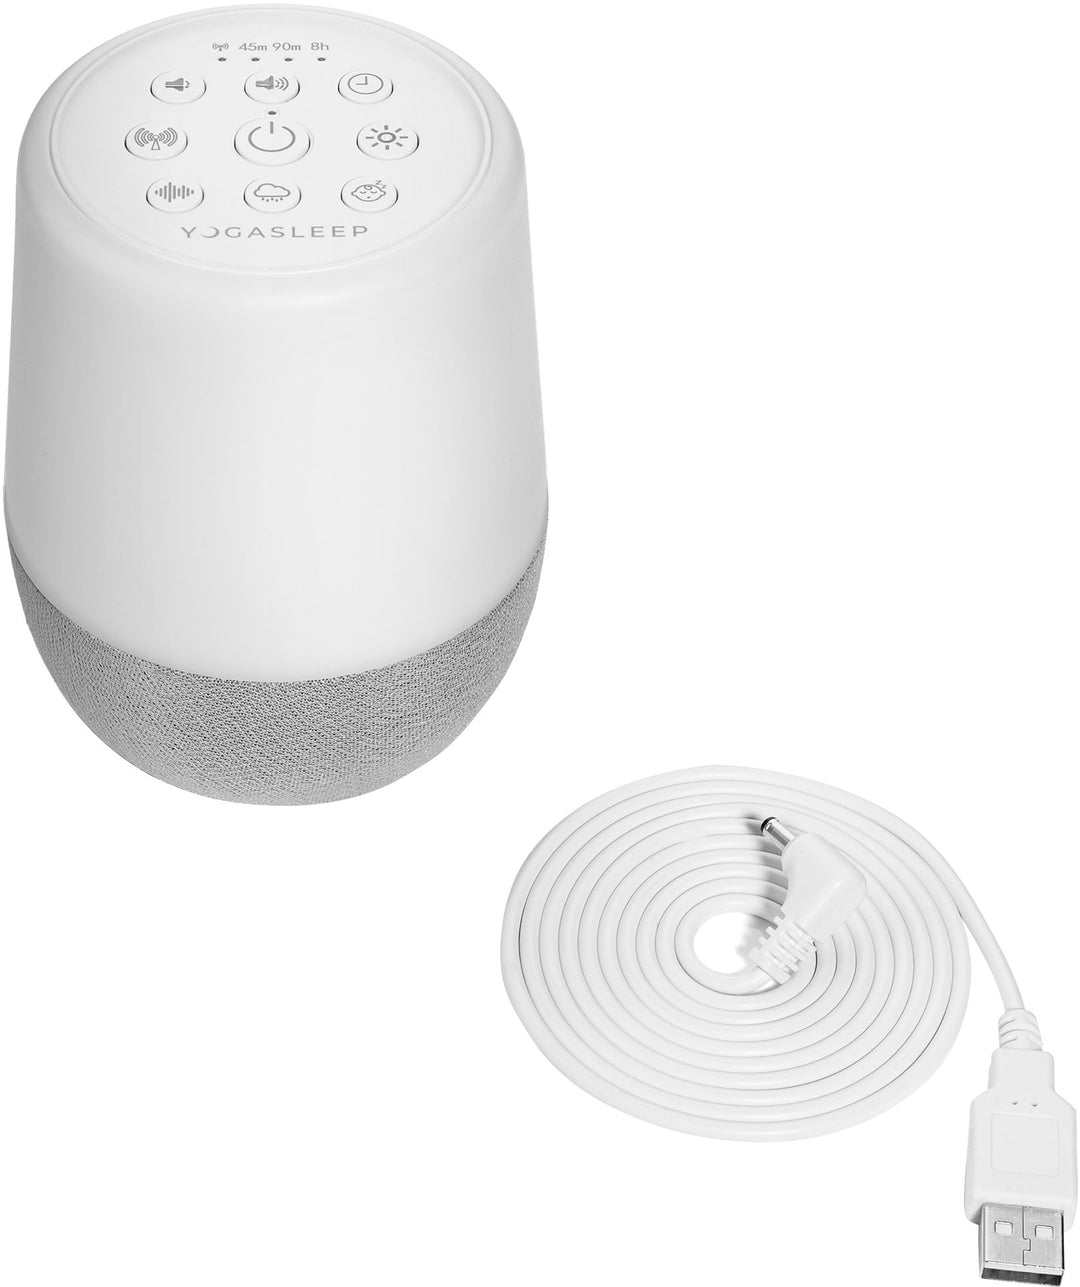 Yogasleep Duet Sound Machine, Night Light & Wireless Speaker - White_6